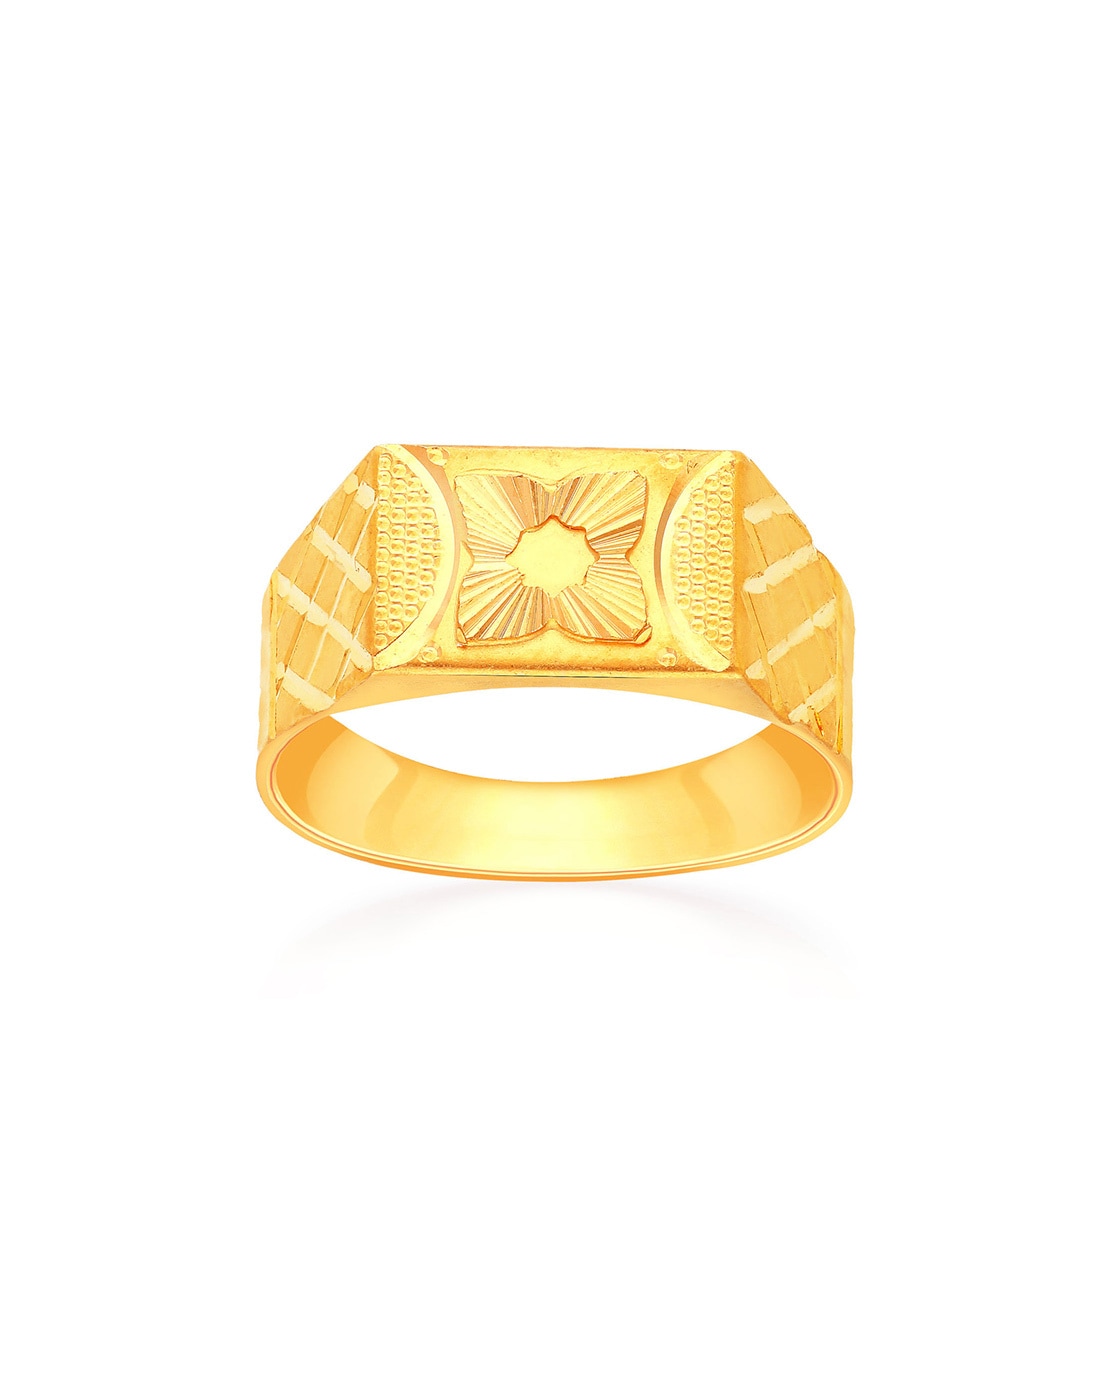 Malabar Gold Ring Design Best Sale - www.puzzlewood.net 1696020705